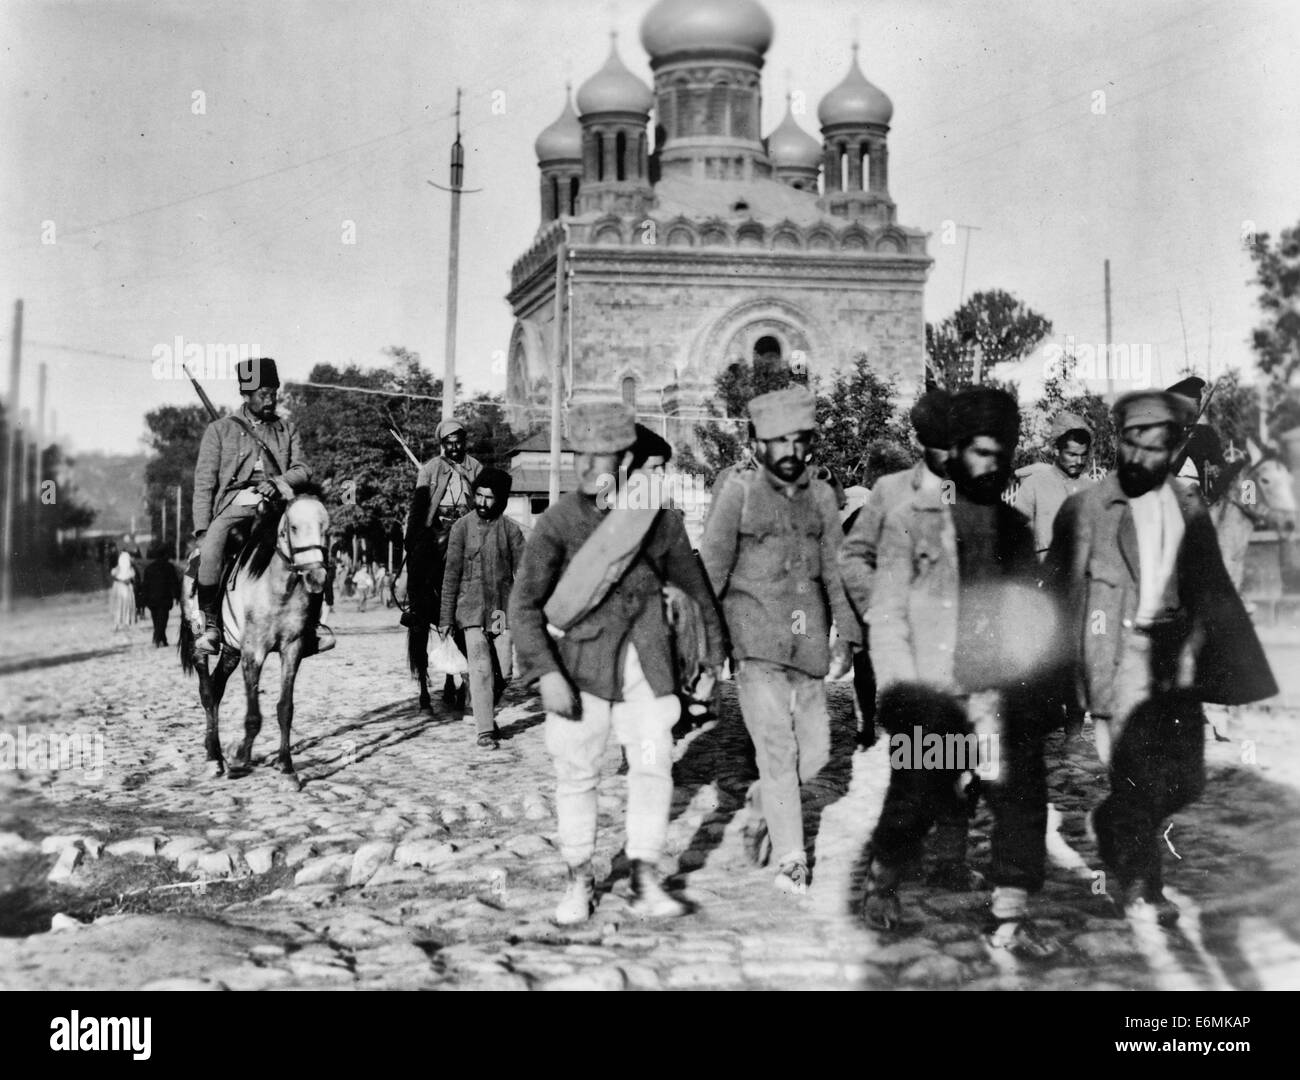 Los soldados armenios en traer un montón de prisioneros, estos hombres eran desertores del ejército de Armenia - Resumen: hombres caminando delante de los soldados a caballo en una calle de adoquines; iglesia de fondo. Octubre de 1919 Foto de stock